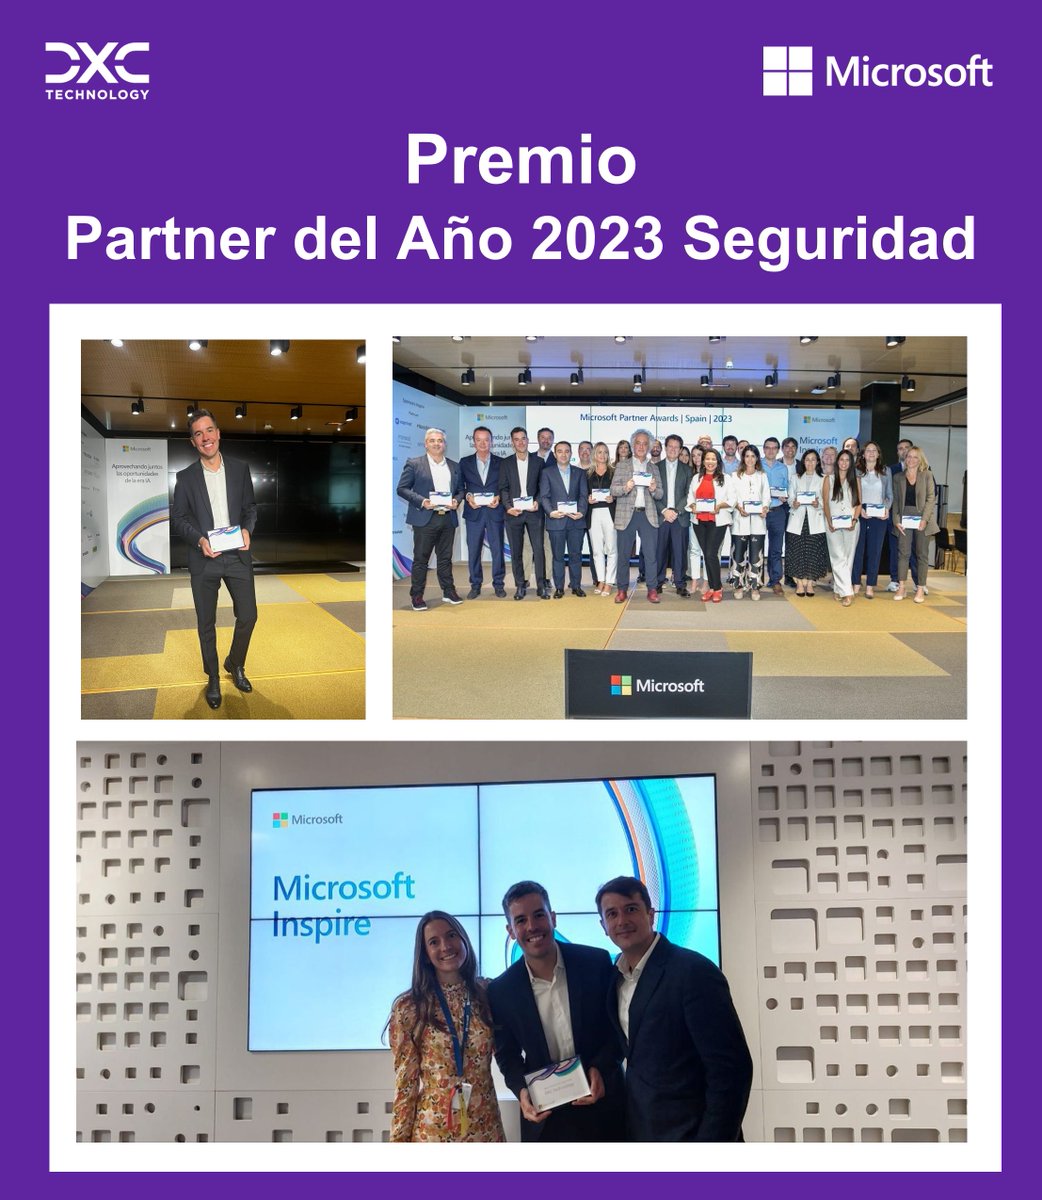 🏆 Microsoft Partner del Año 2023 Seguridad 🏆
En @DXCspain recibimos este reconocimiento con un gran orgullo y muy satisfechos de la labor realizada por todo el equipo de #ciberseguridad en estos últimos años. 
#MicrosoftInspire2023 #DXCPartners